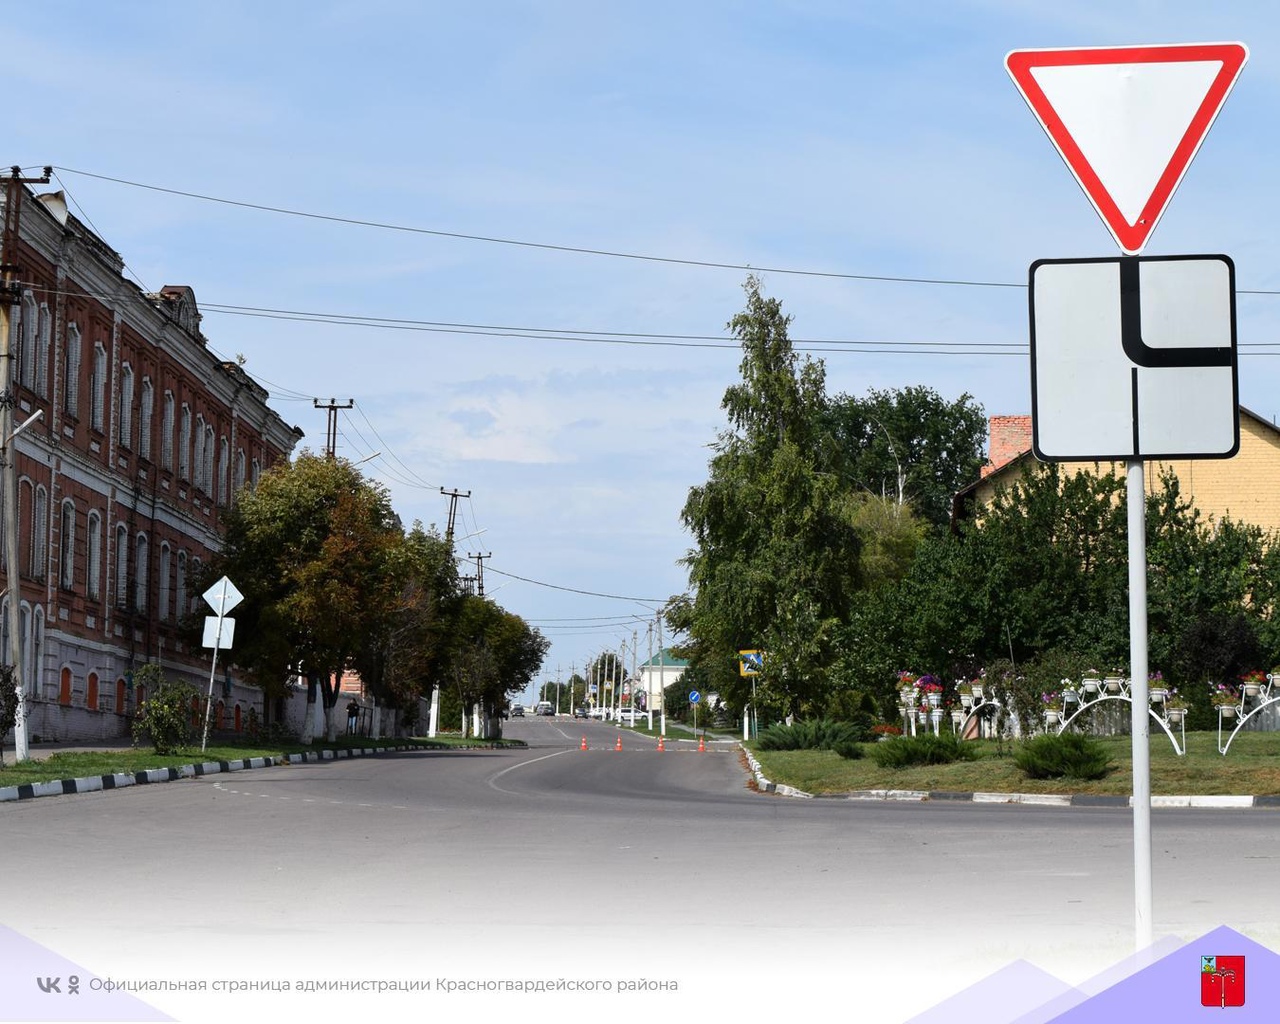 Информируем вас об ограничении дорожного движения на время празднования Дня Красногвардейского района..